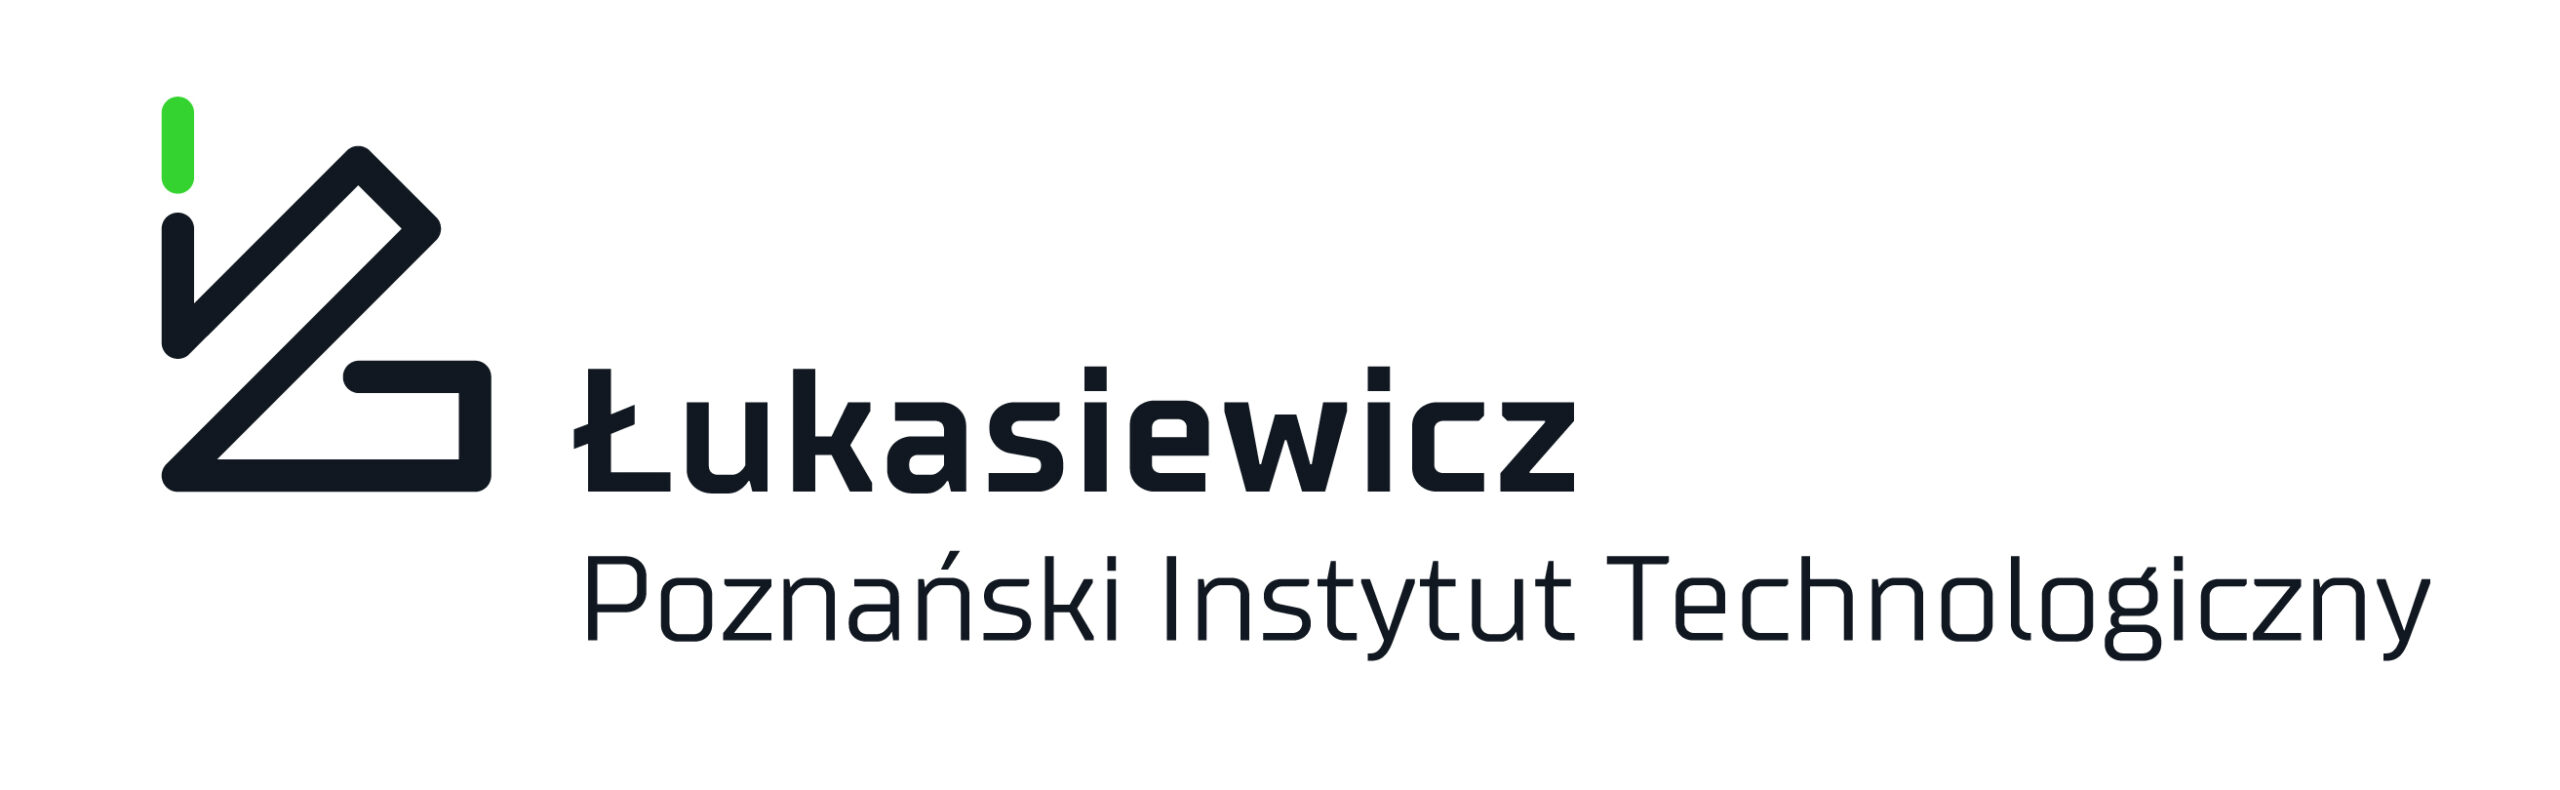 Łukasiewicz-PIT_uzup_pelna.jpg